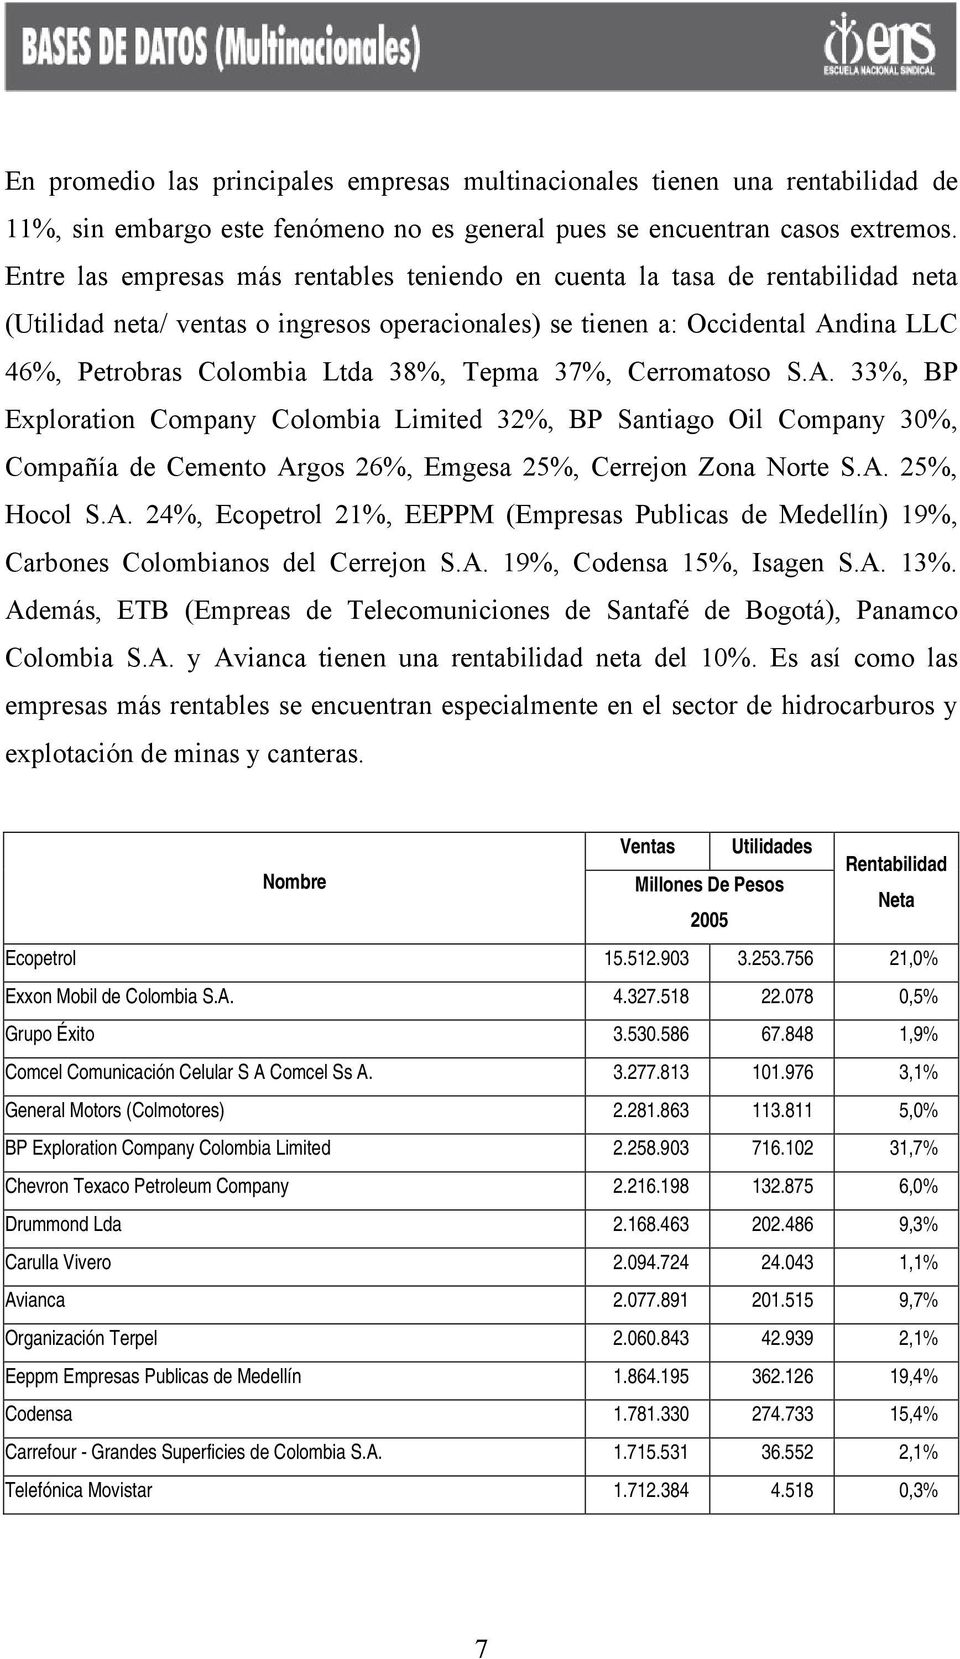 Tepma 37%, Cerromatoso S.A. 33%, BP Exploration Company Colombia Limited 32%, BP Santiago Oil Company 30%, Compañía de Cemento Argos 26%, Emgesa 25%, Cerrejon Zona Norte S.A. 25%, Hocol S.A. 24%, Ecopetrol 21%, EEPPM (Empresas Publicas de Medellín) 19%, Carbones Colombianos del Cerrejon S.